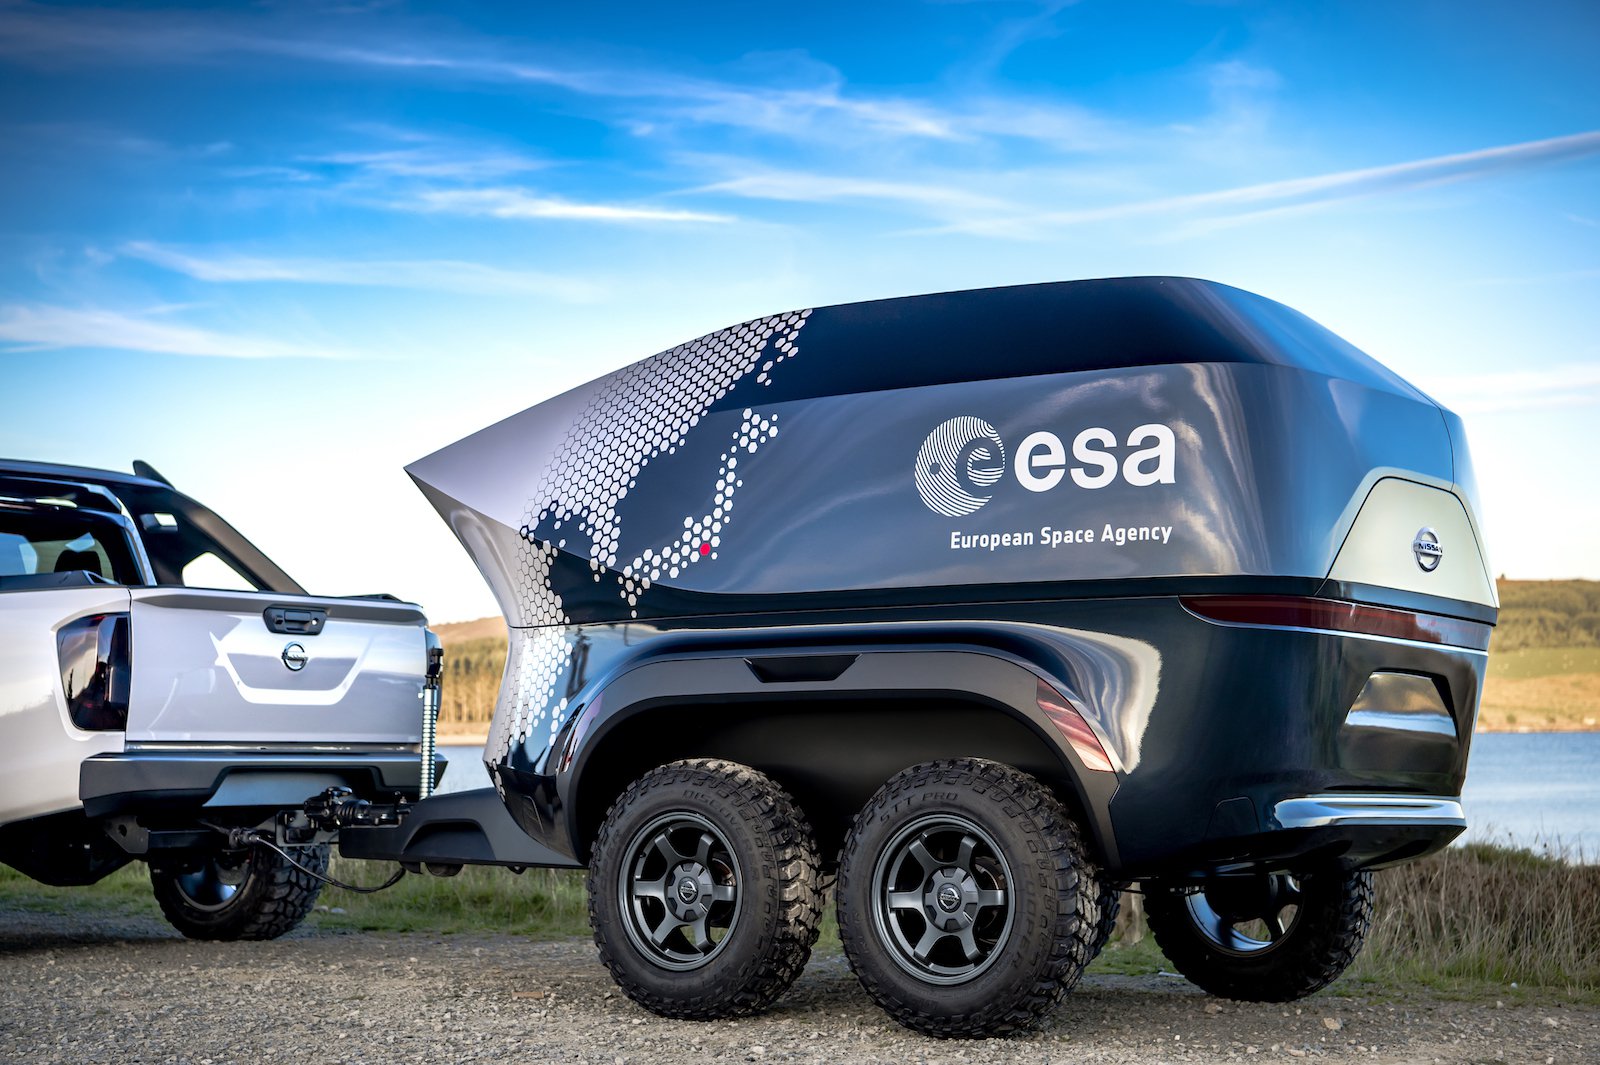 Nissan et l'ESA ont présenté un suv pour les astronomes, équipé d'un télescope